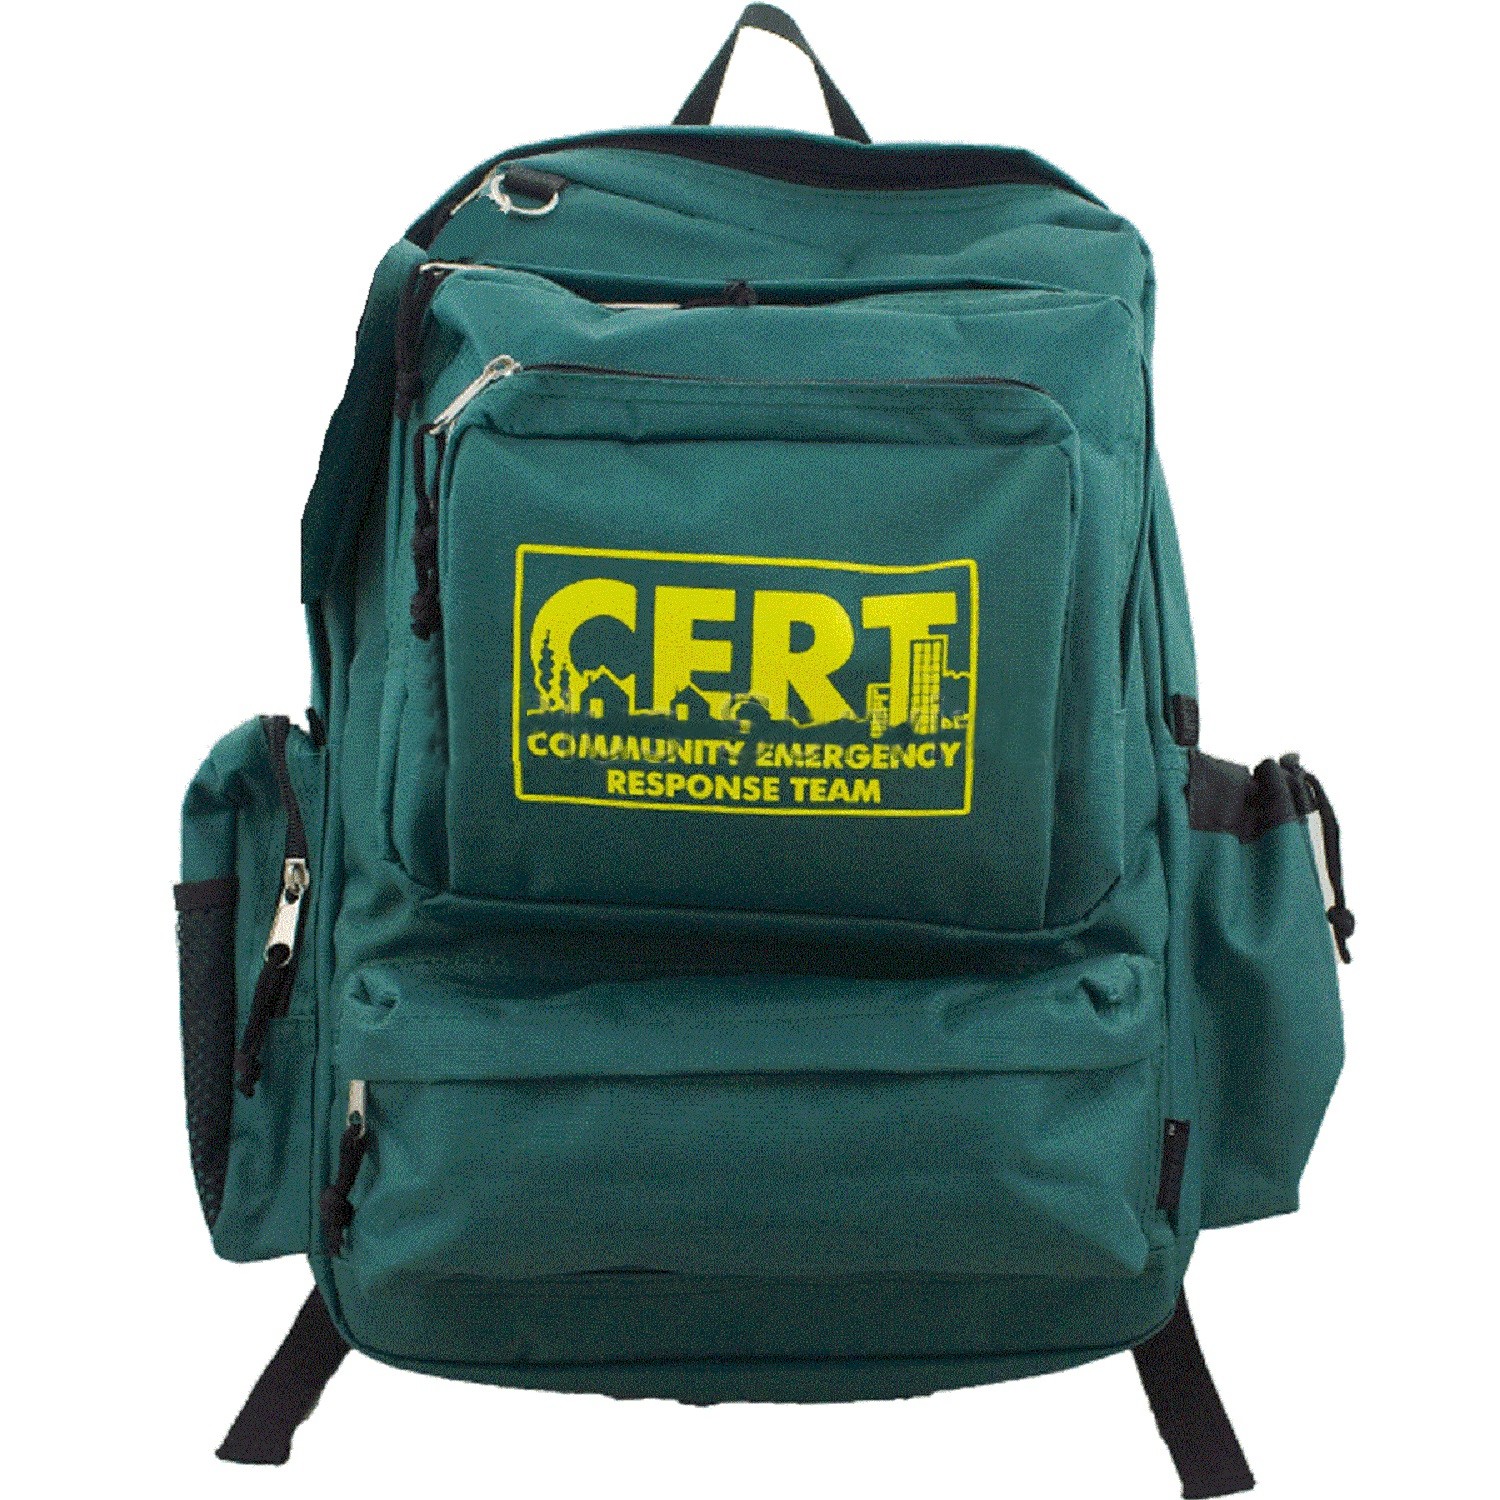 hunting backpack, survival kit backpack, medical backpack